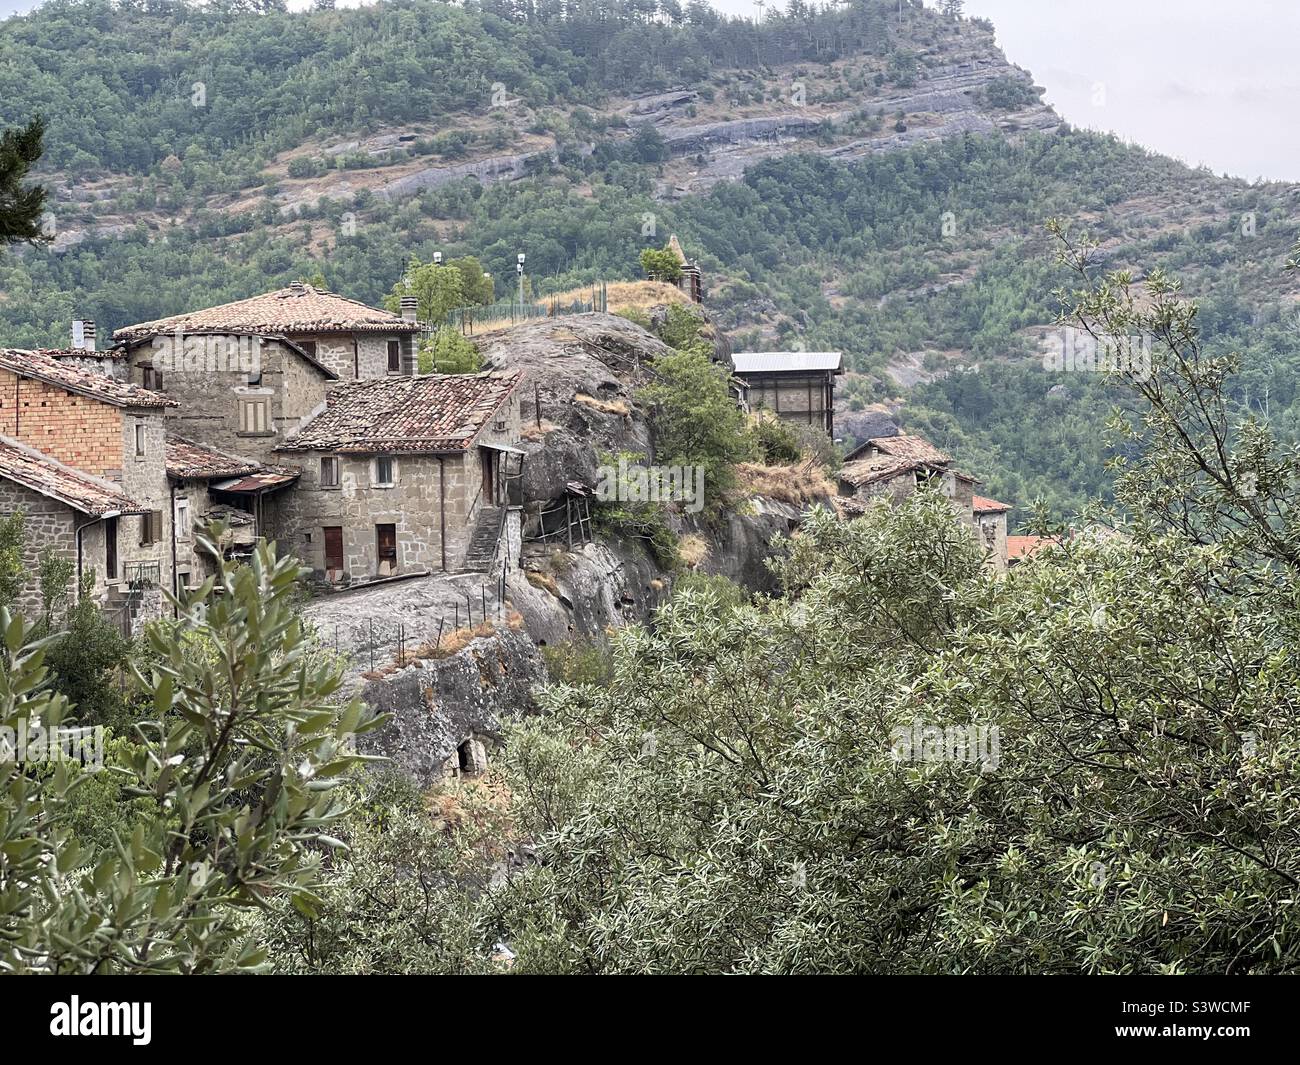 Tallacano village, Ascoli Piceno province, Marche region, Italy Stock Photo